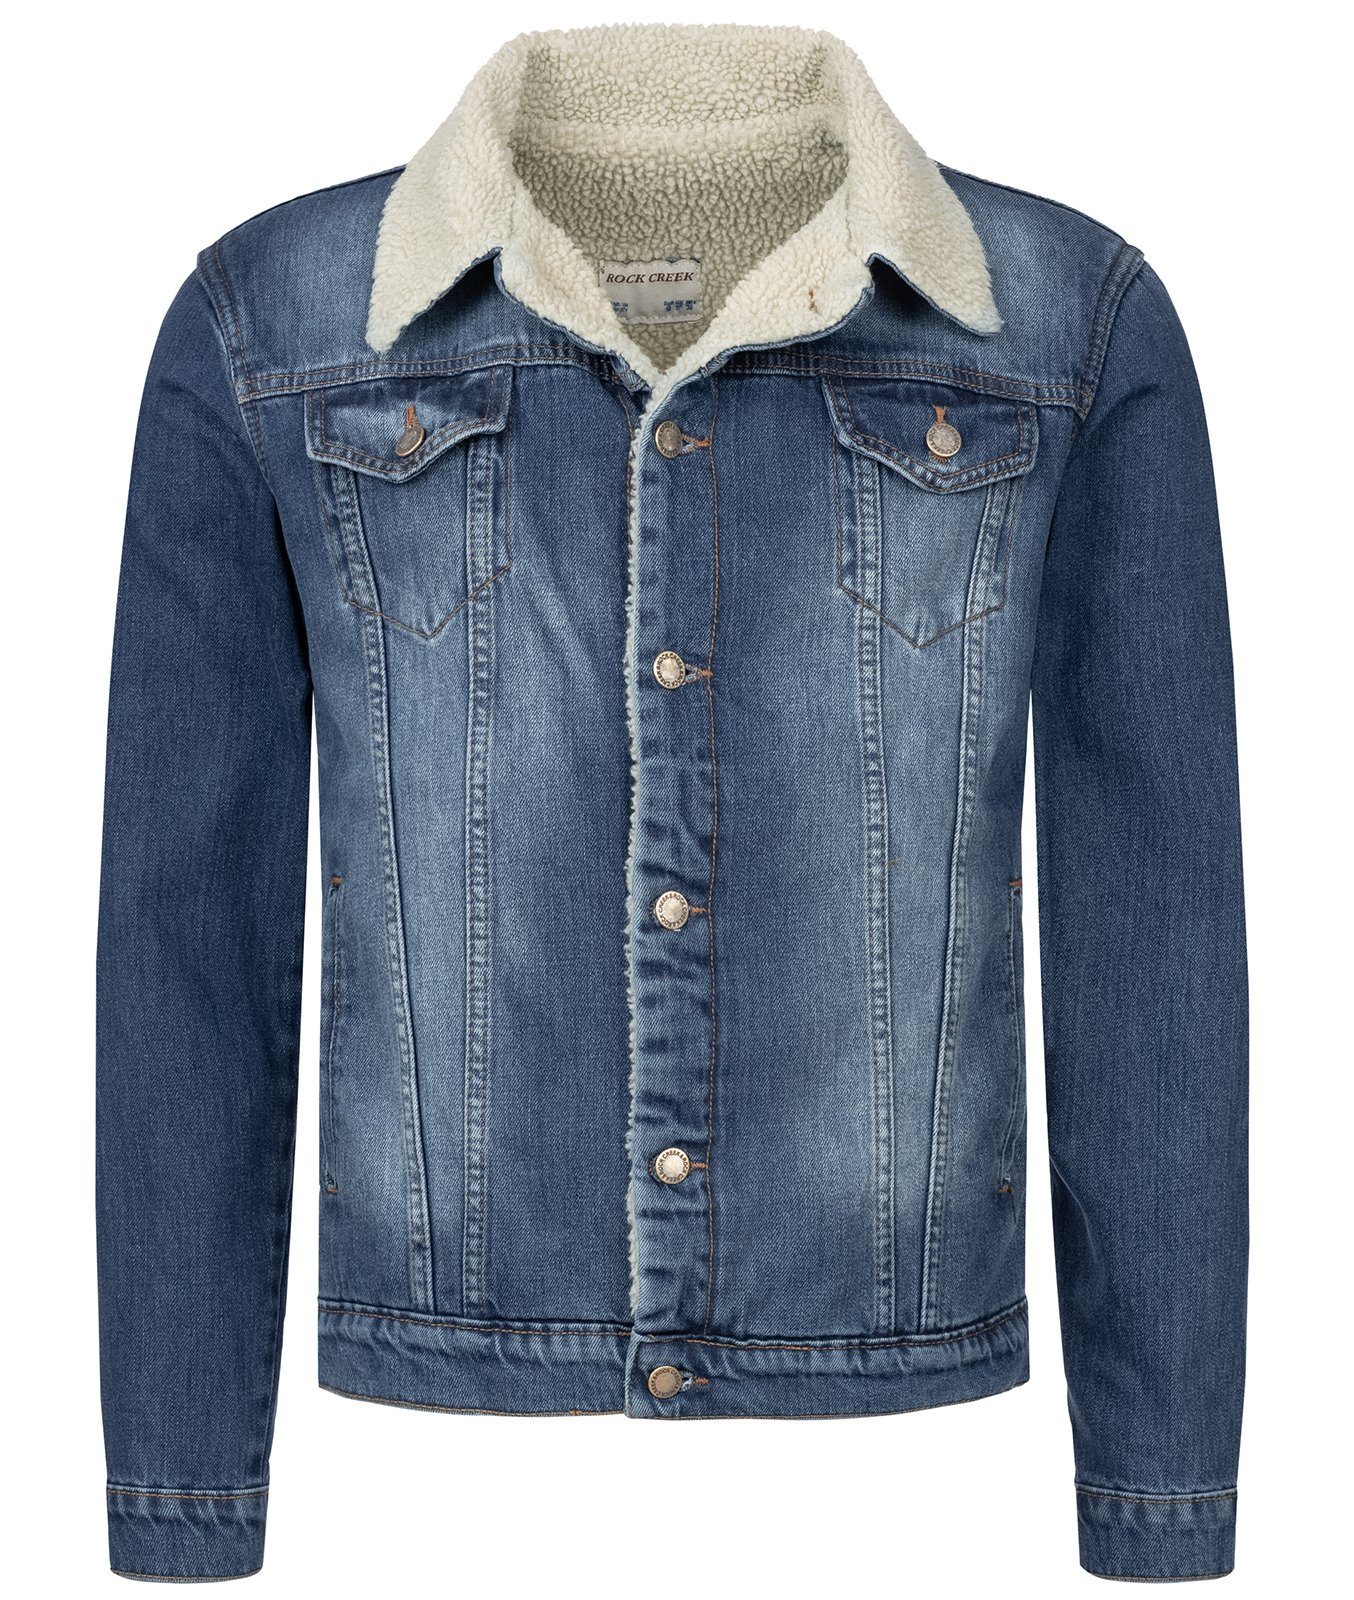 Rock Creek Winterjacke »Rock Creek Winter Jeansjacke mit Teddyfellkragen  H-217« online kaufen | OTTO